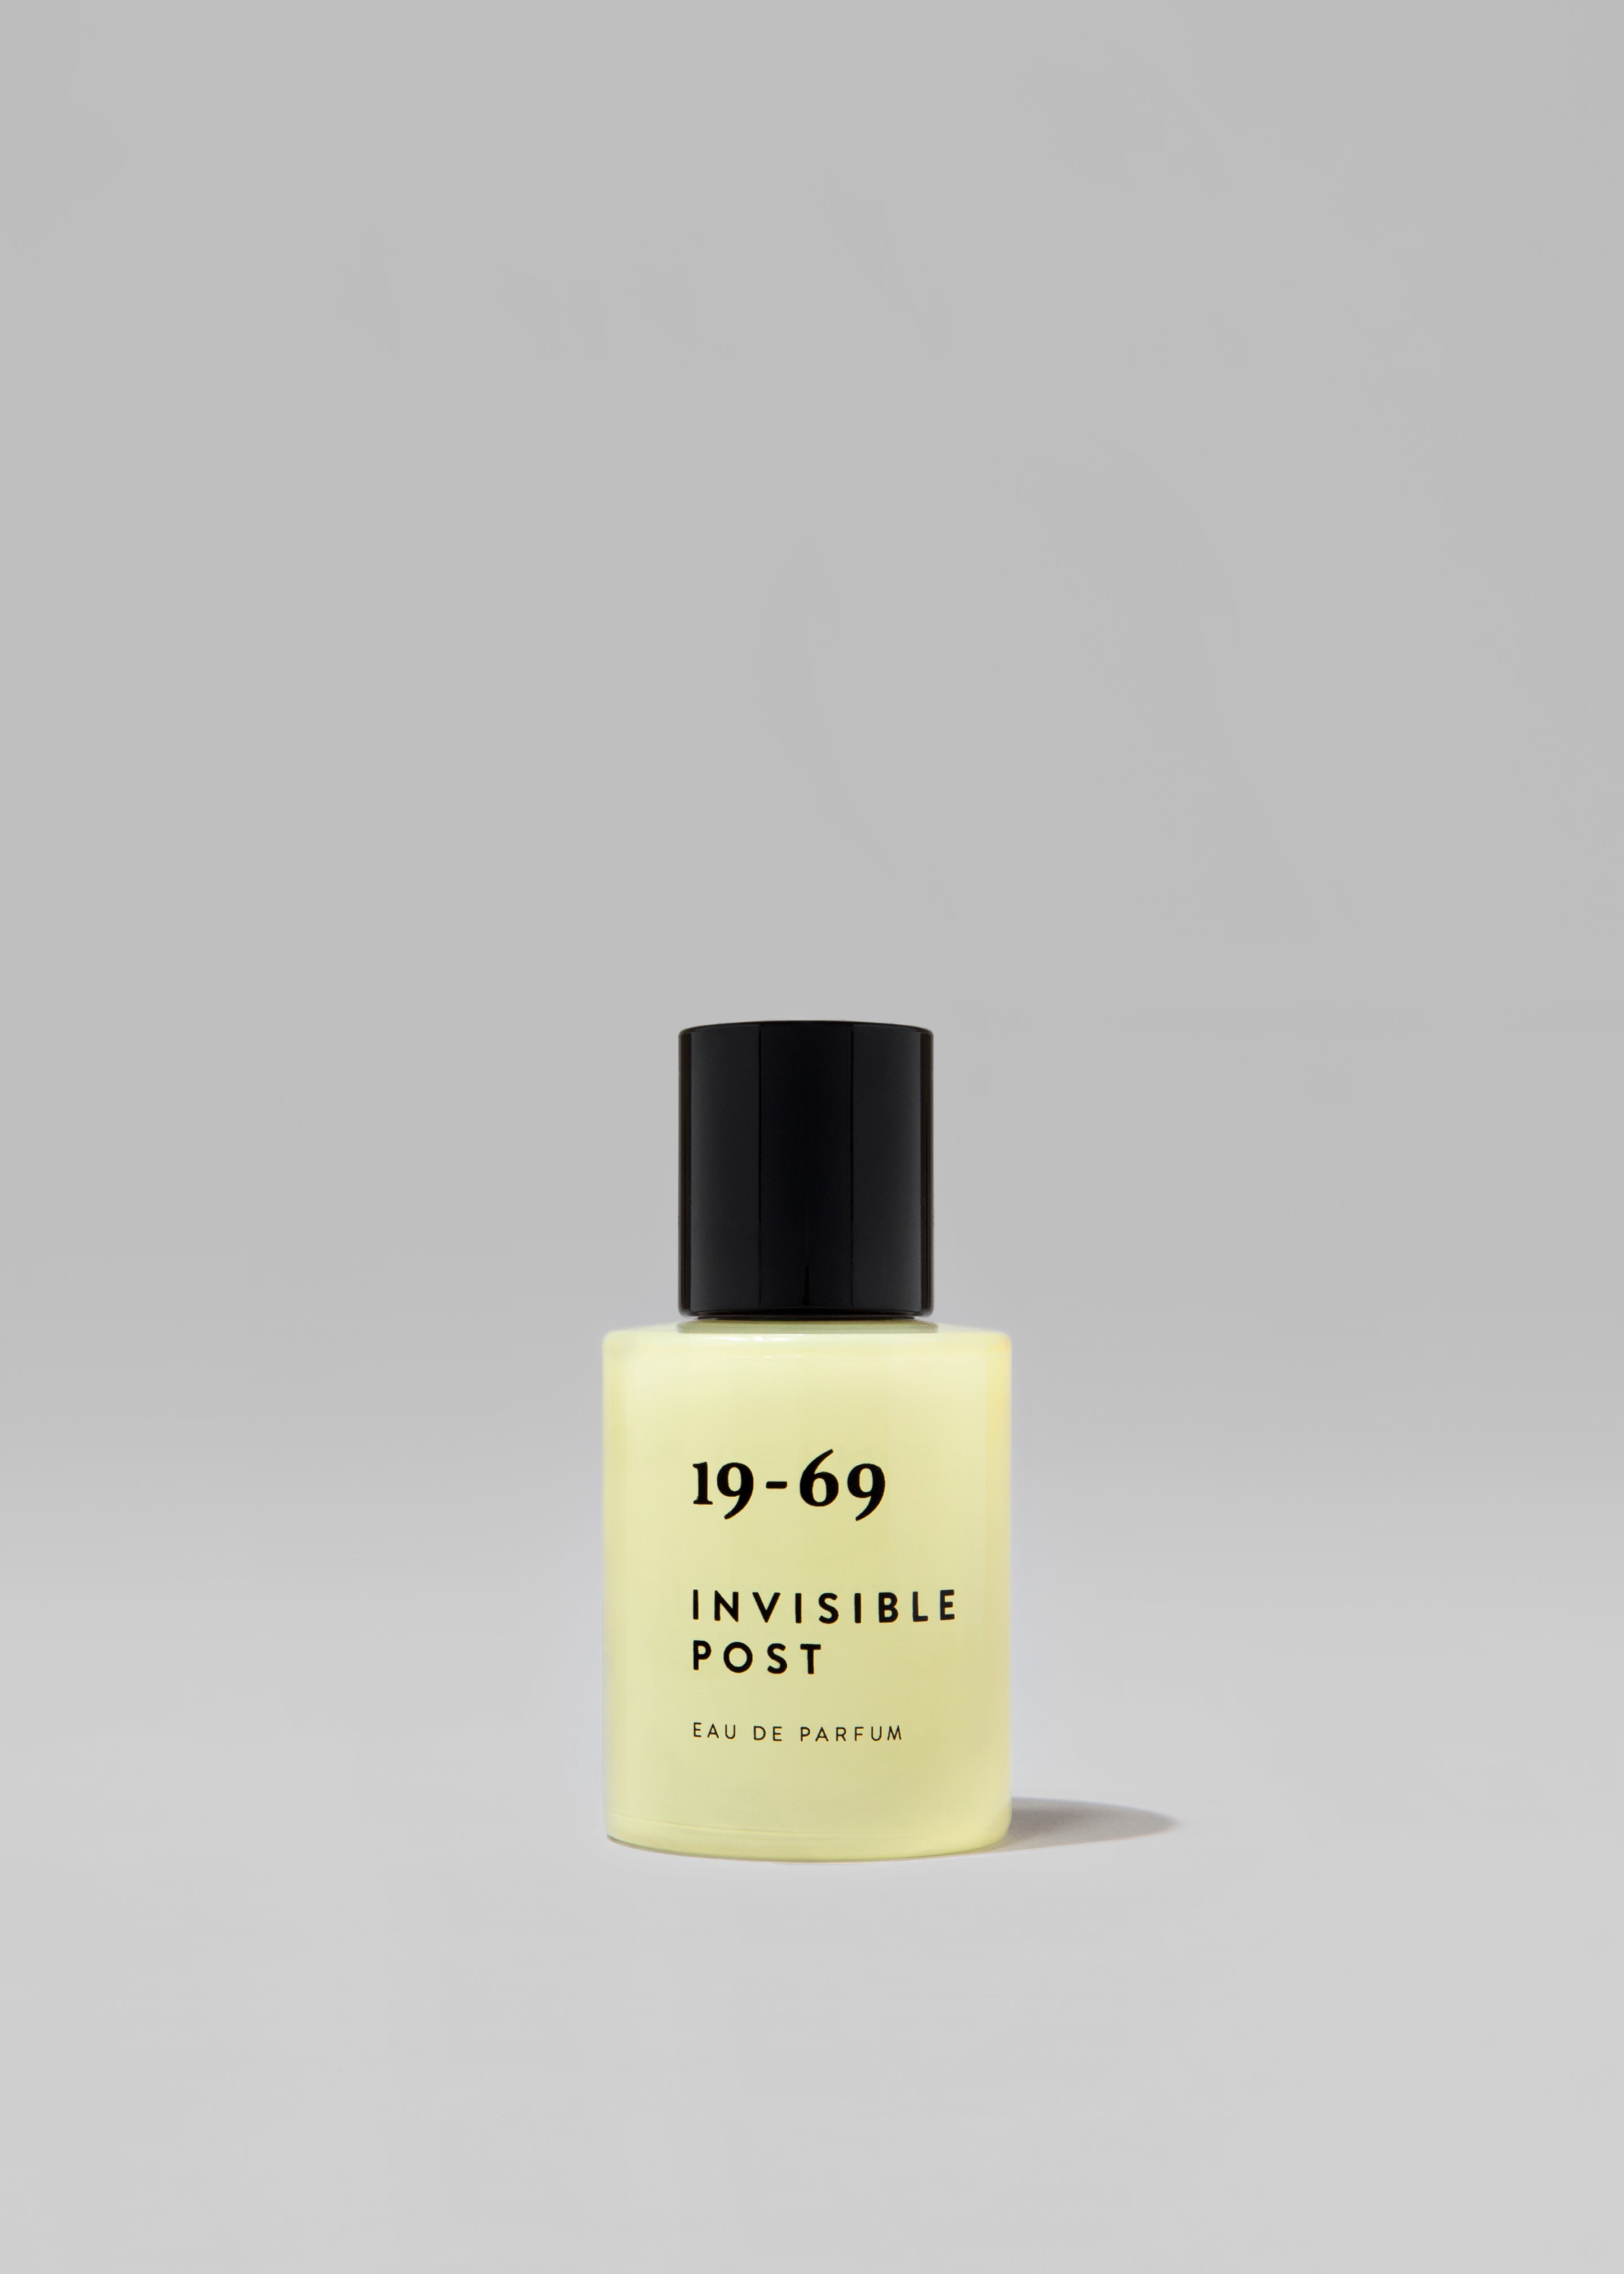 19-69 Invisible Post Eau de Parfum - 3